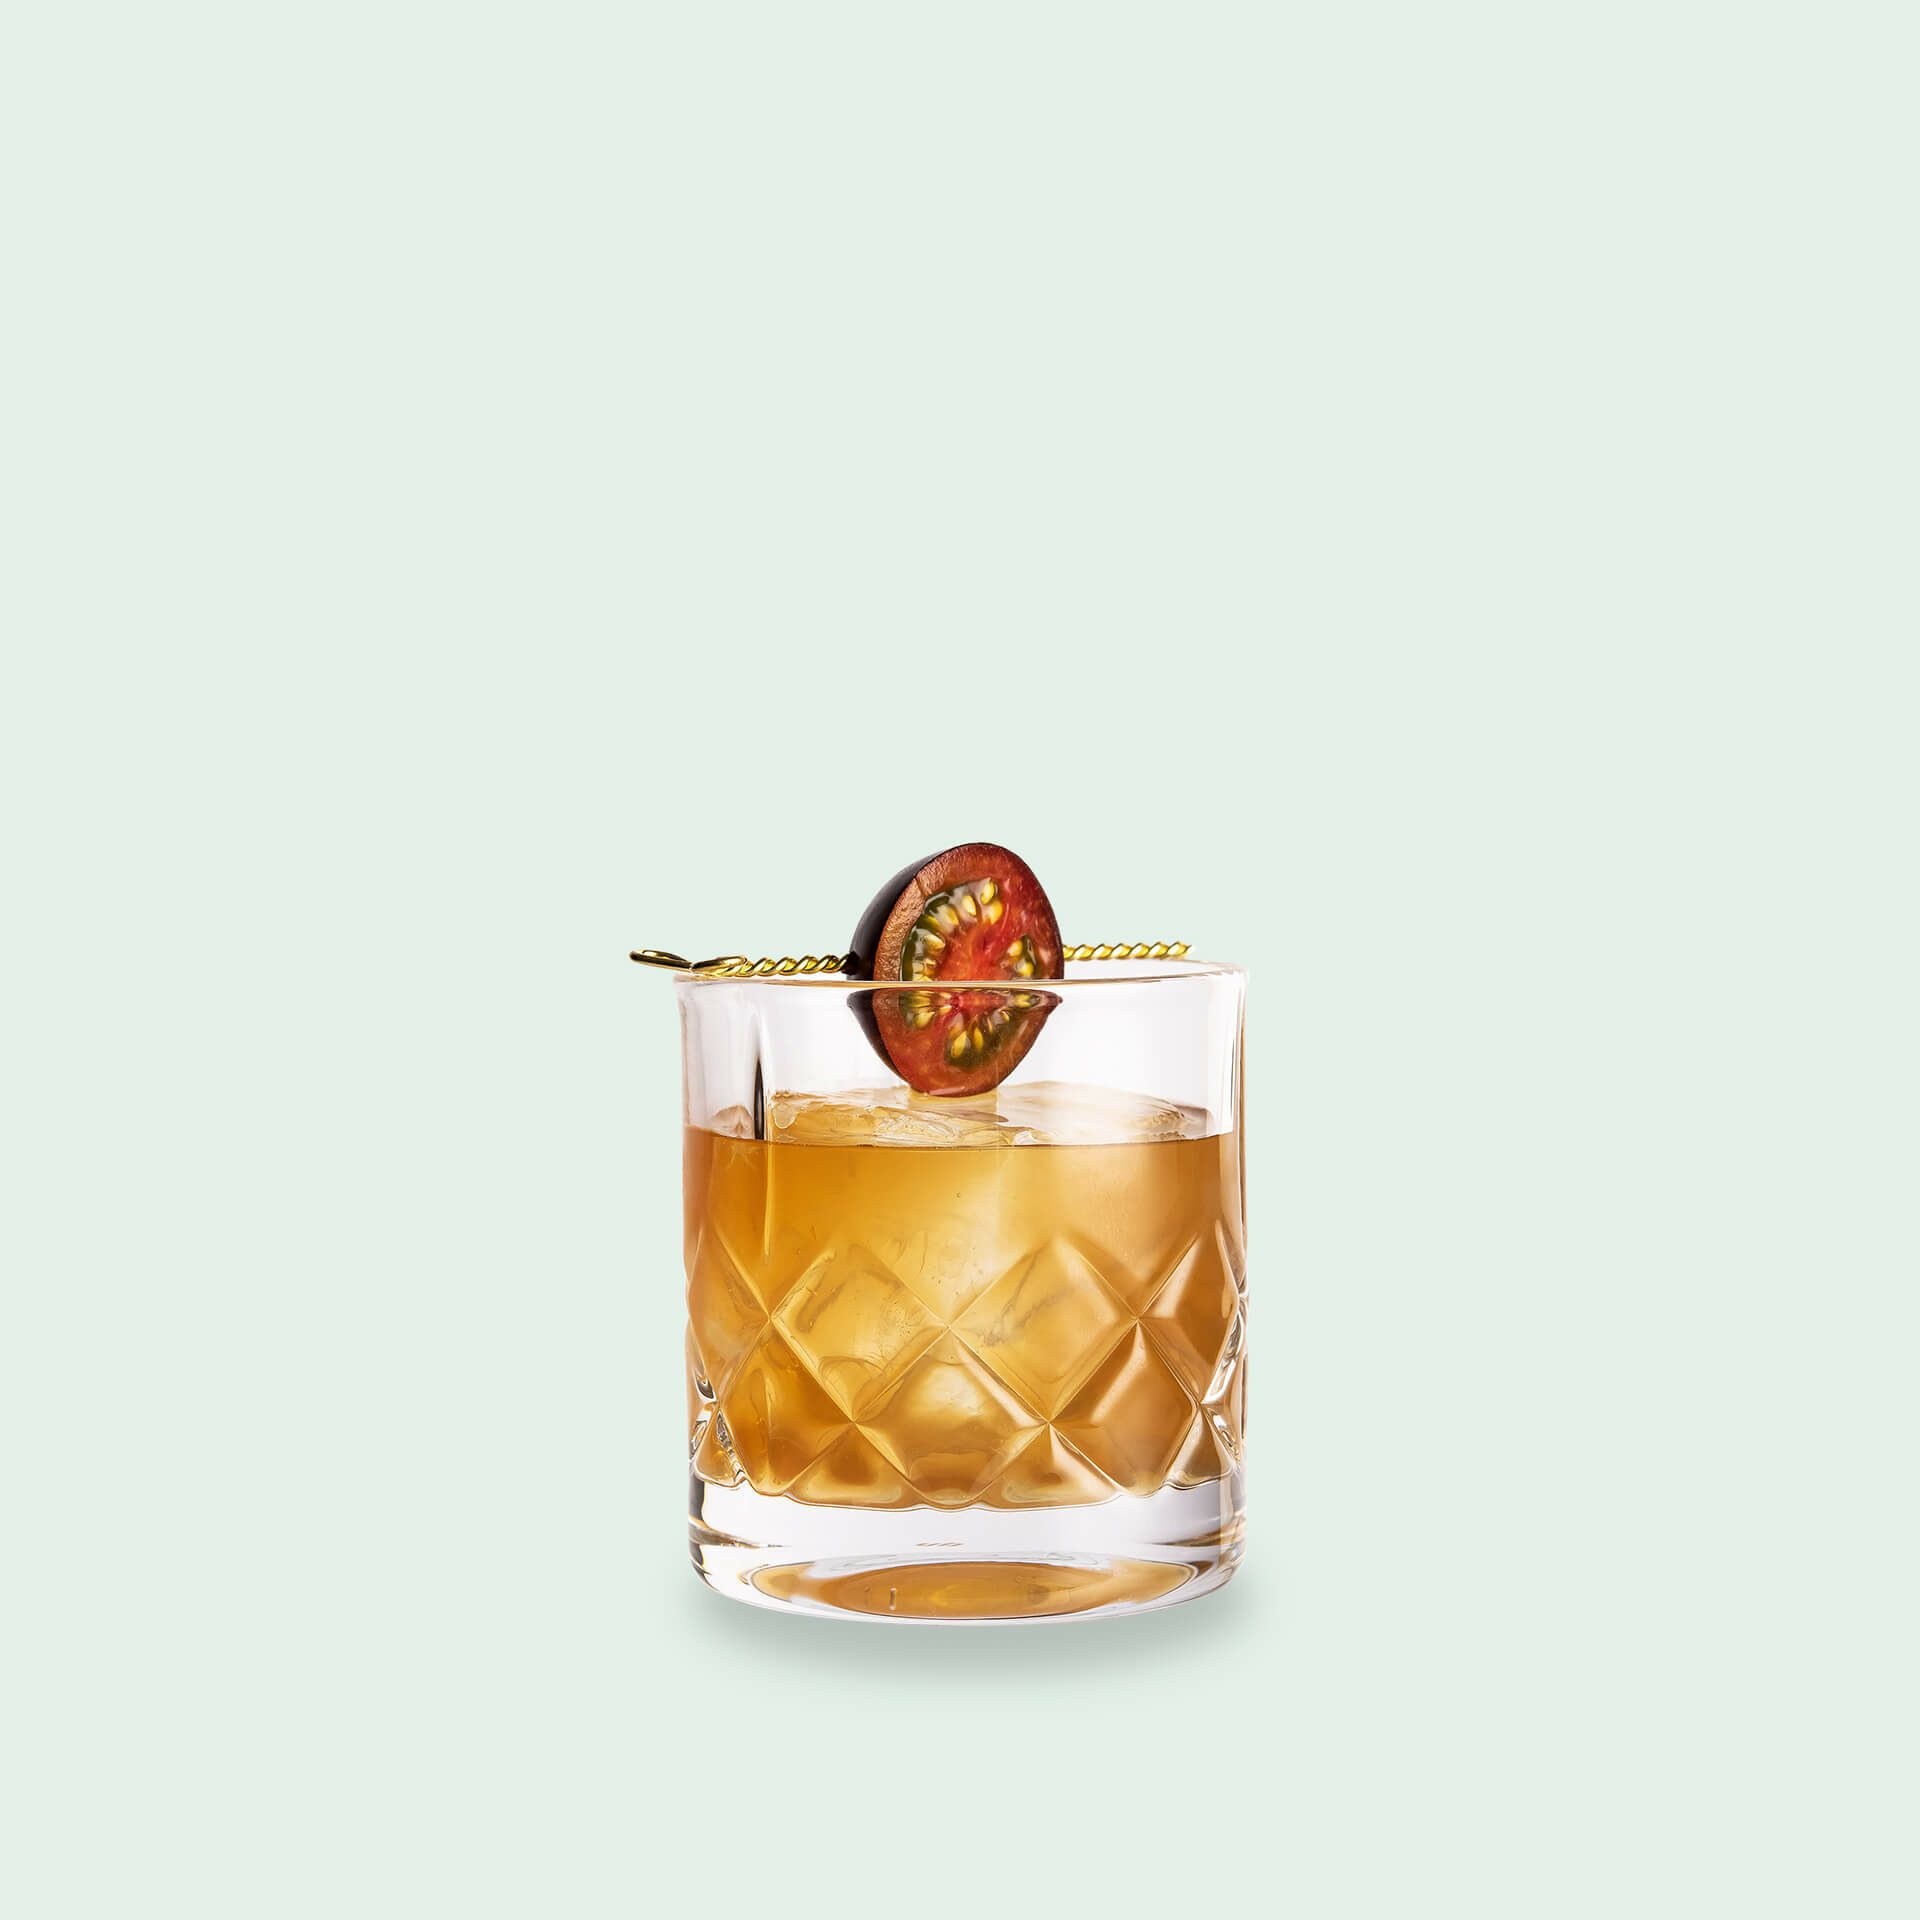 Whisky Cocktail Umami von Reinhard Pohorec im Drink Syndikat Set Whisky und Schokolade